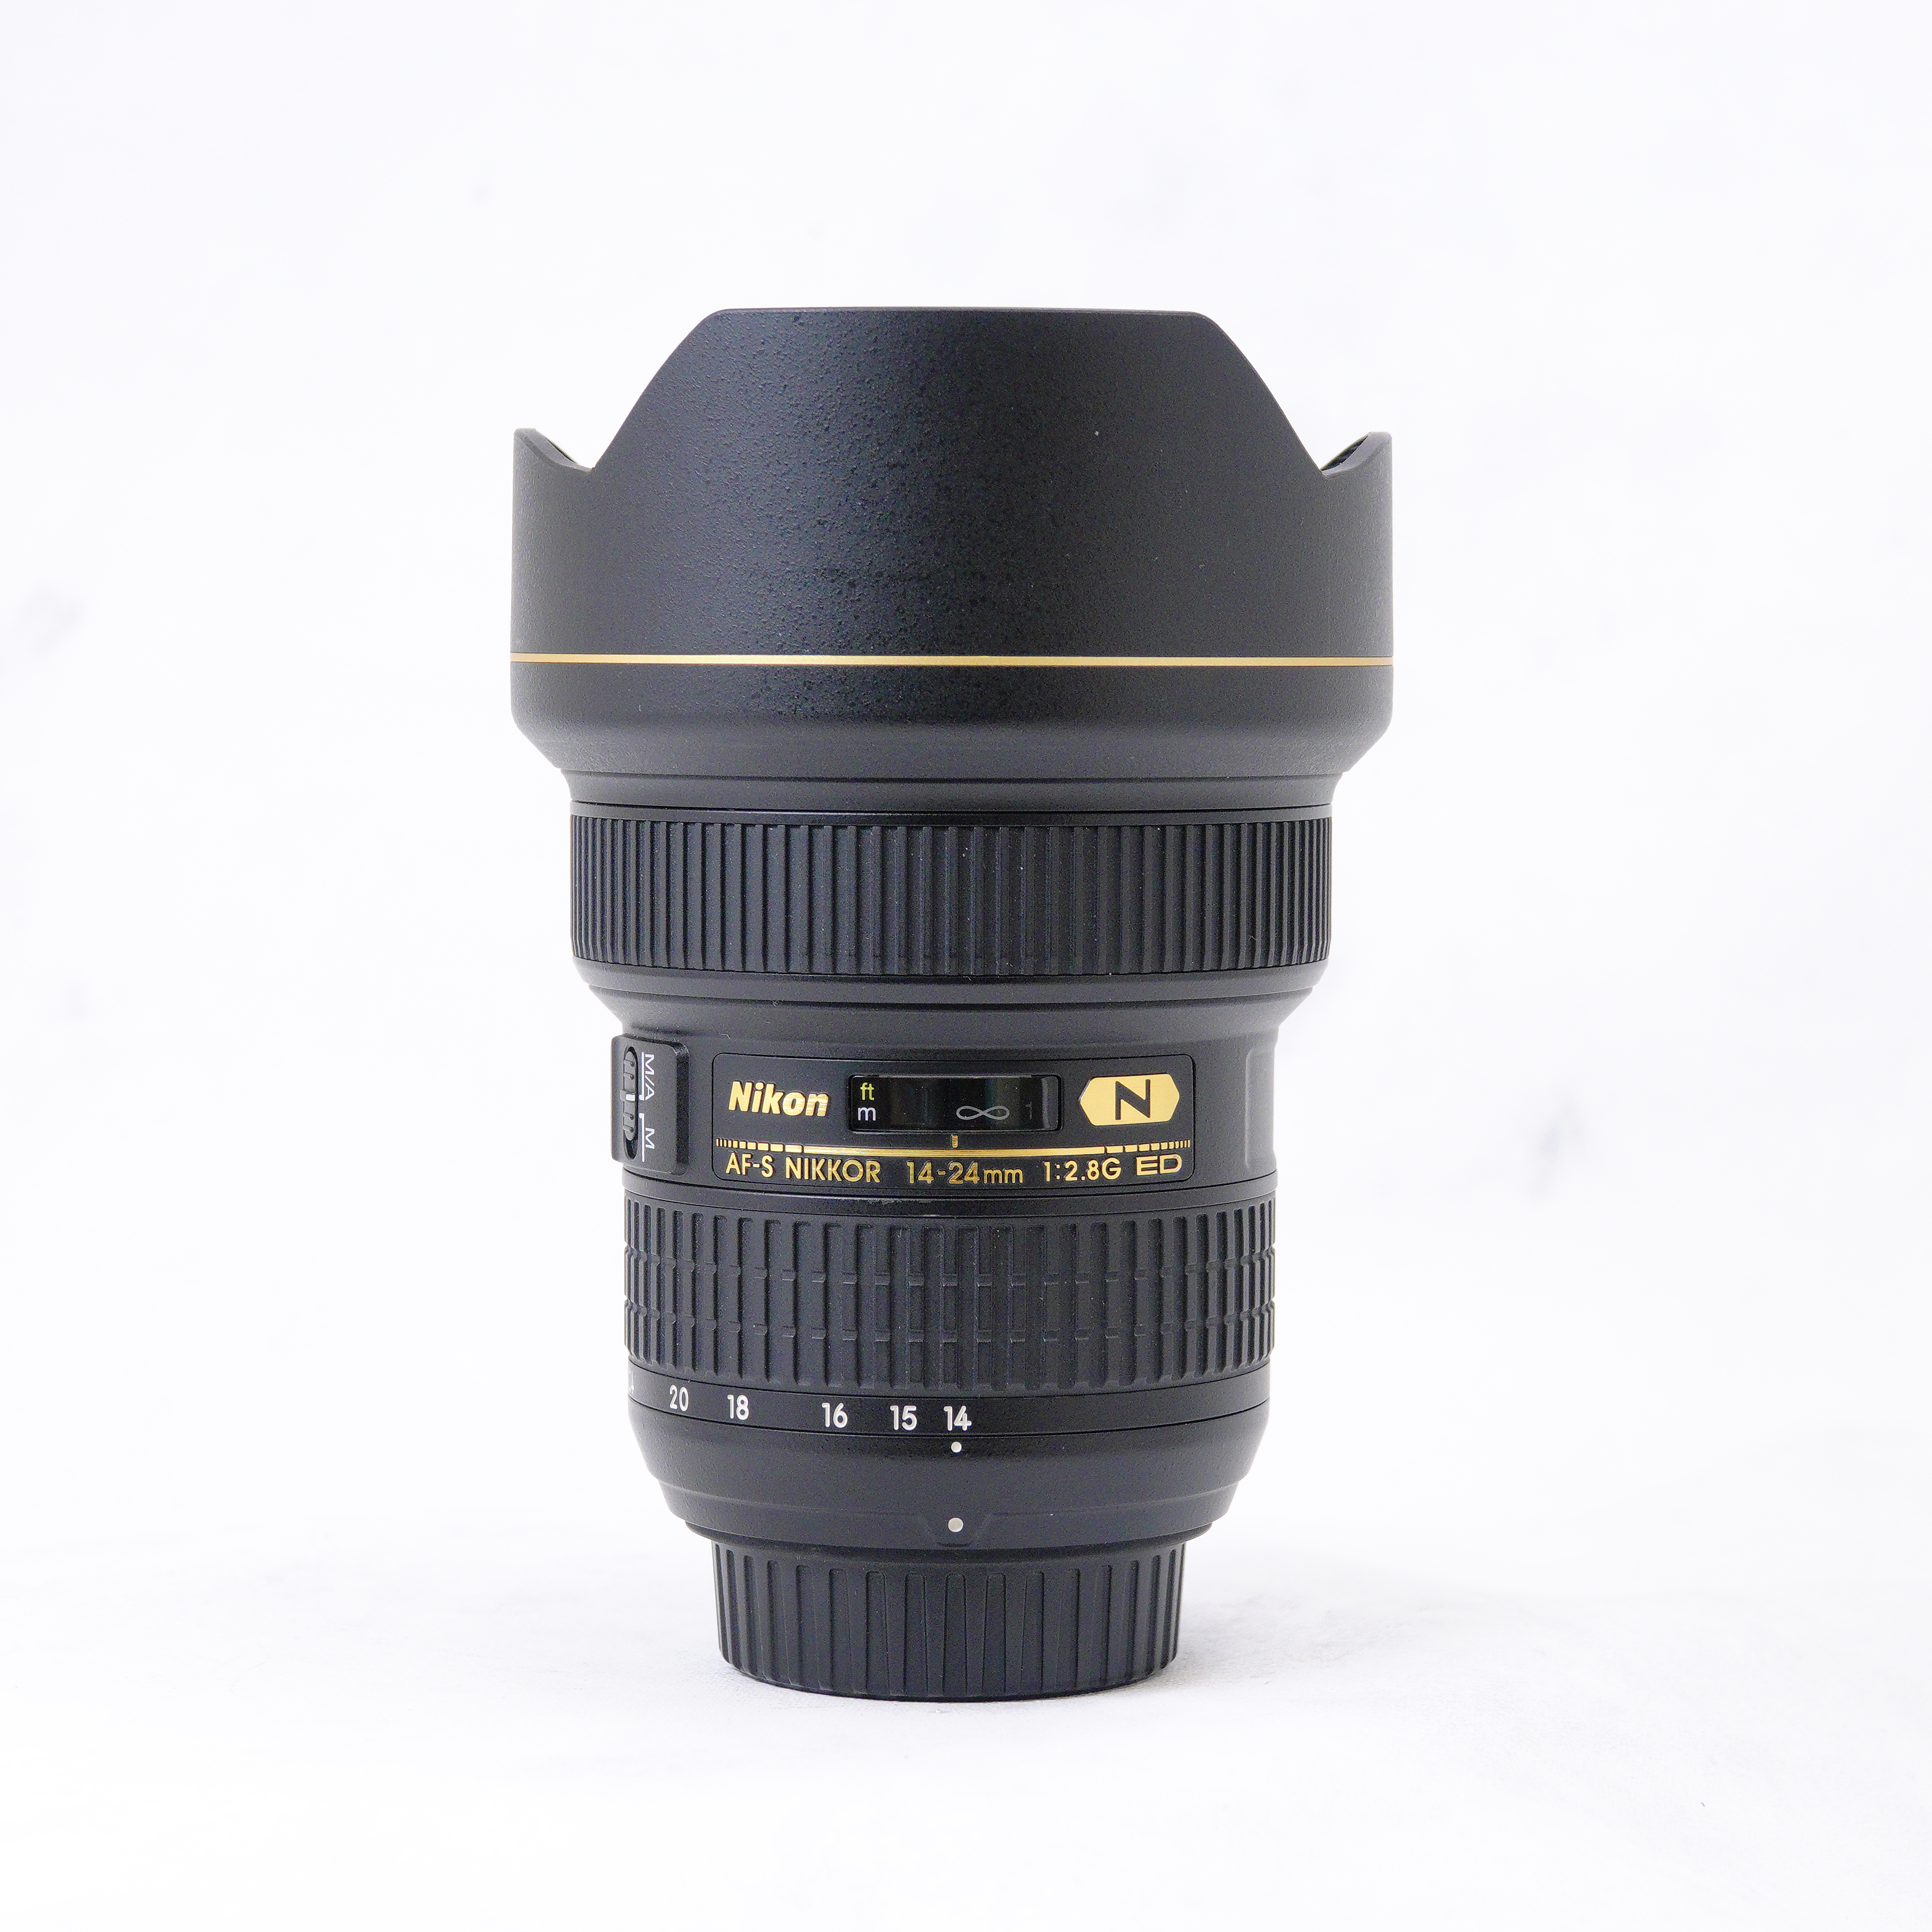 Nikon AF-S 14-24mm F2.8 G ED + Filter Lee SW-150' - Usado 